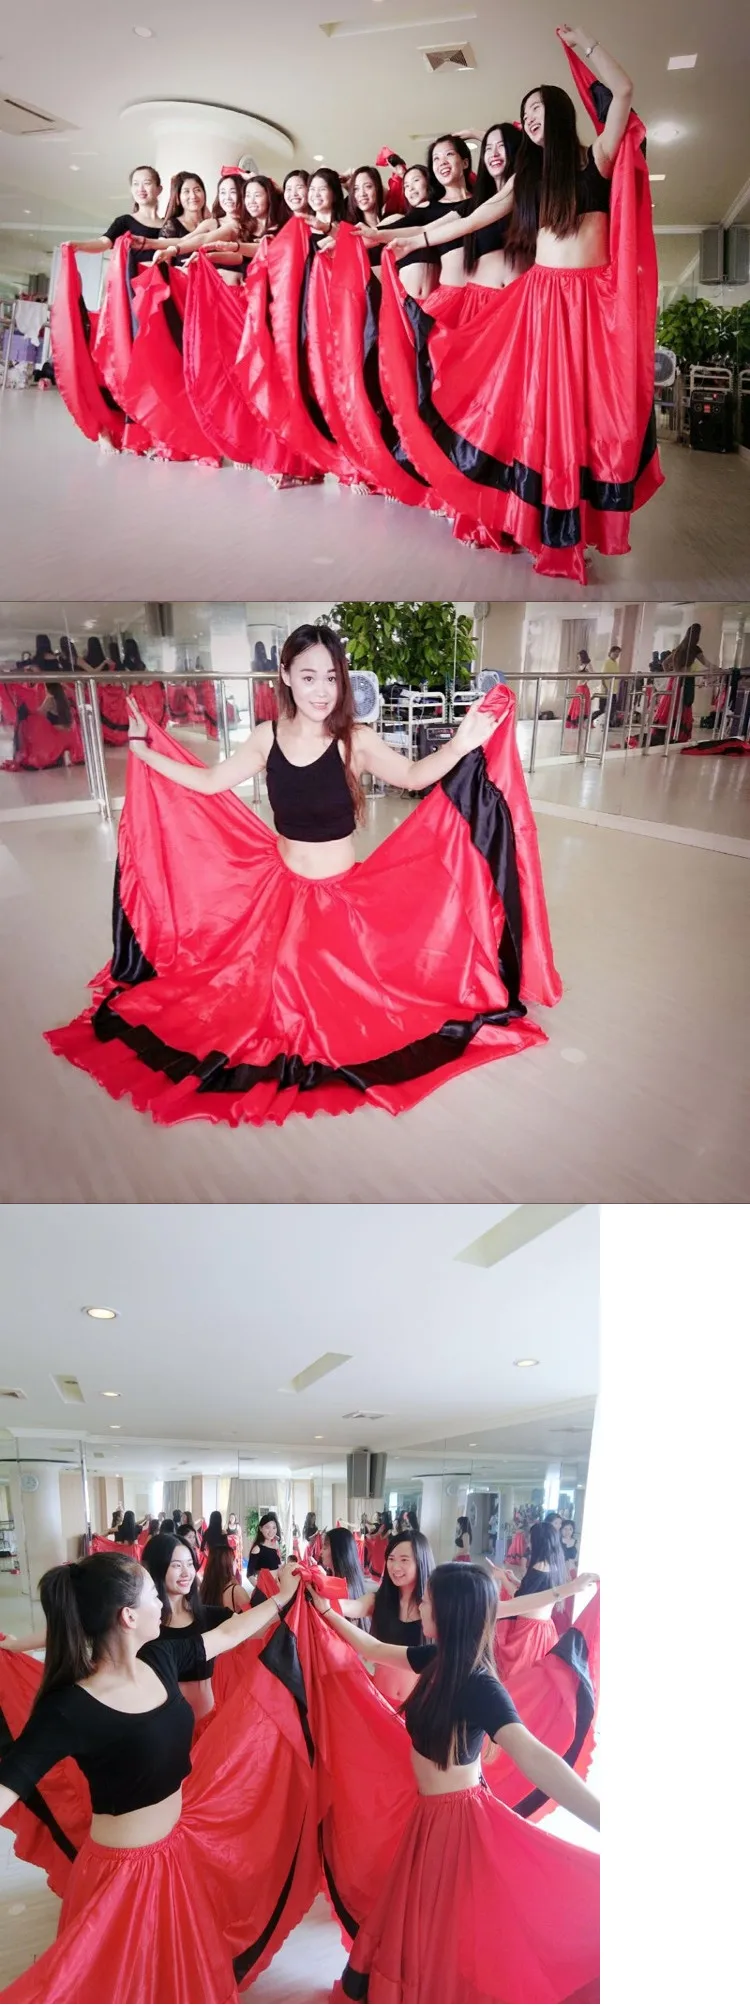 Стиль скидка испанская коррида живота платье с широкой юбкой для танцев длинные юбки фламенко красный и черный фламенко платья для женщин